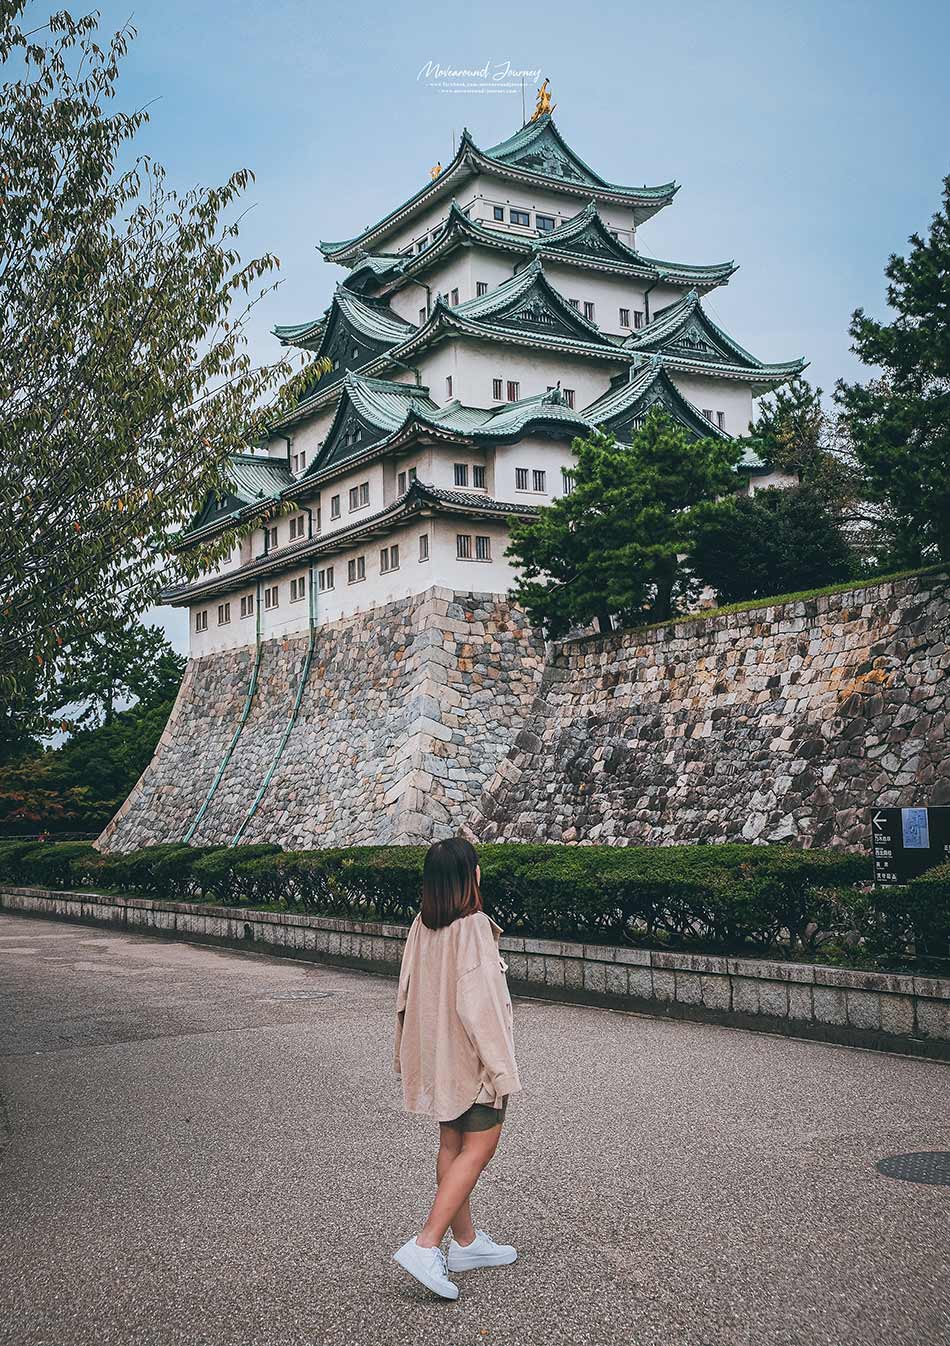 Nagoya Castle ปราสาท นาโกย่า